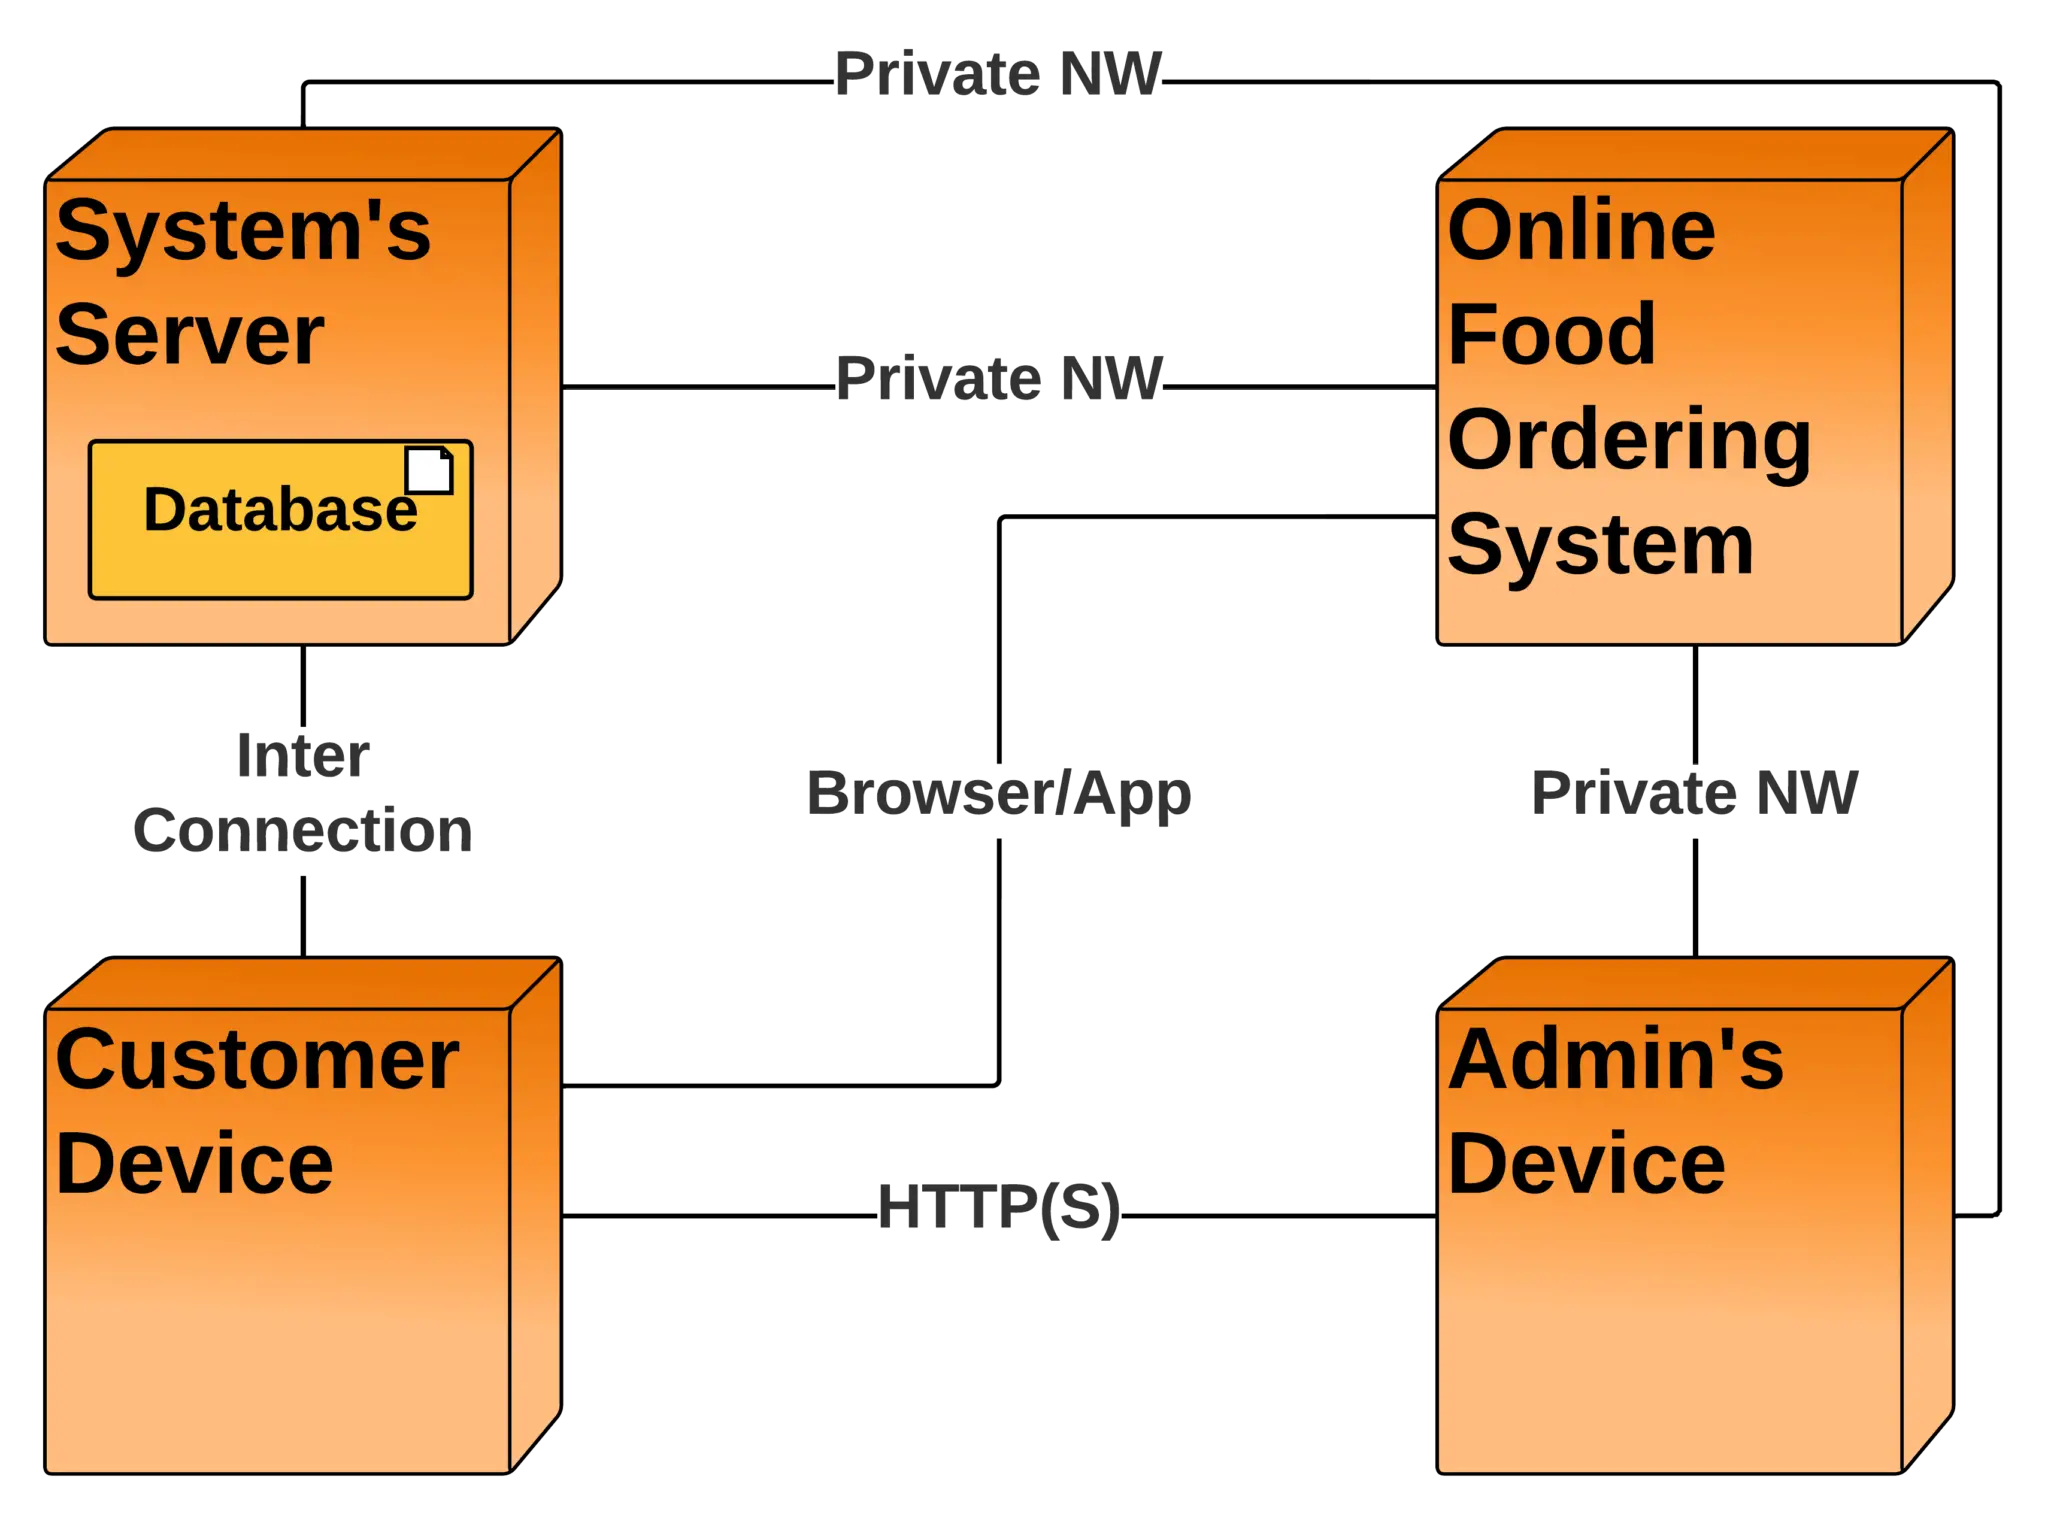 Food Ordering Uml Diagrams For Online Food Ordering S - vrogue.co